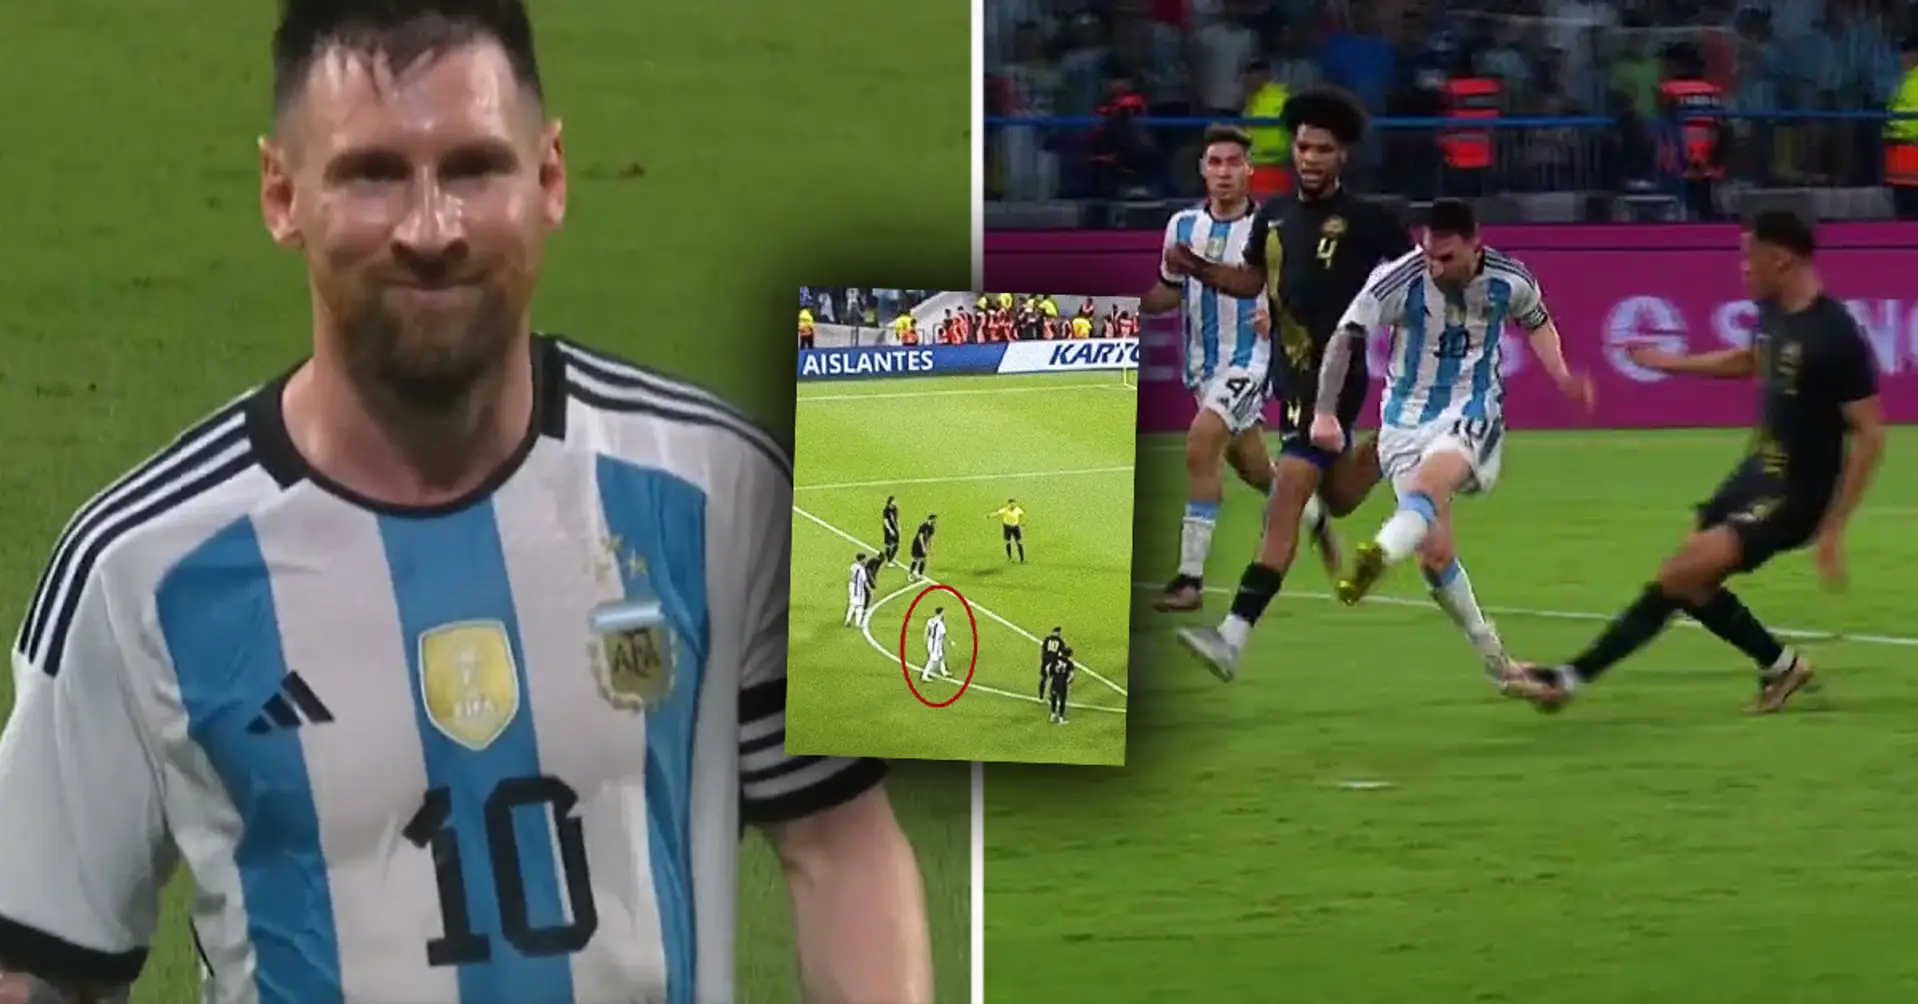 Das Herz eines Champions: Messis wunderbare Geste im Spiel von Argentinien zeigte, was für ein Mensch er ist